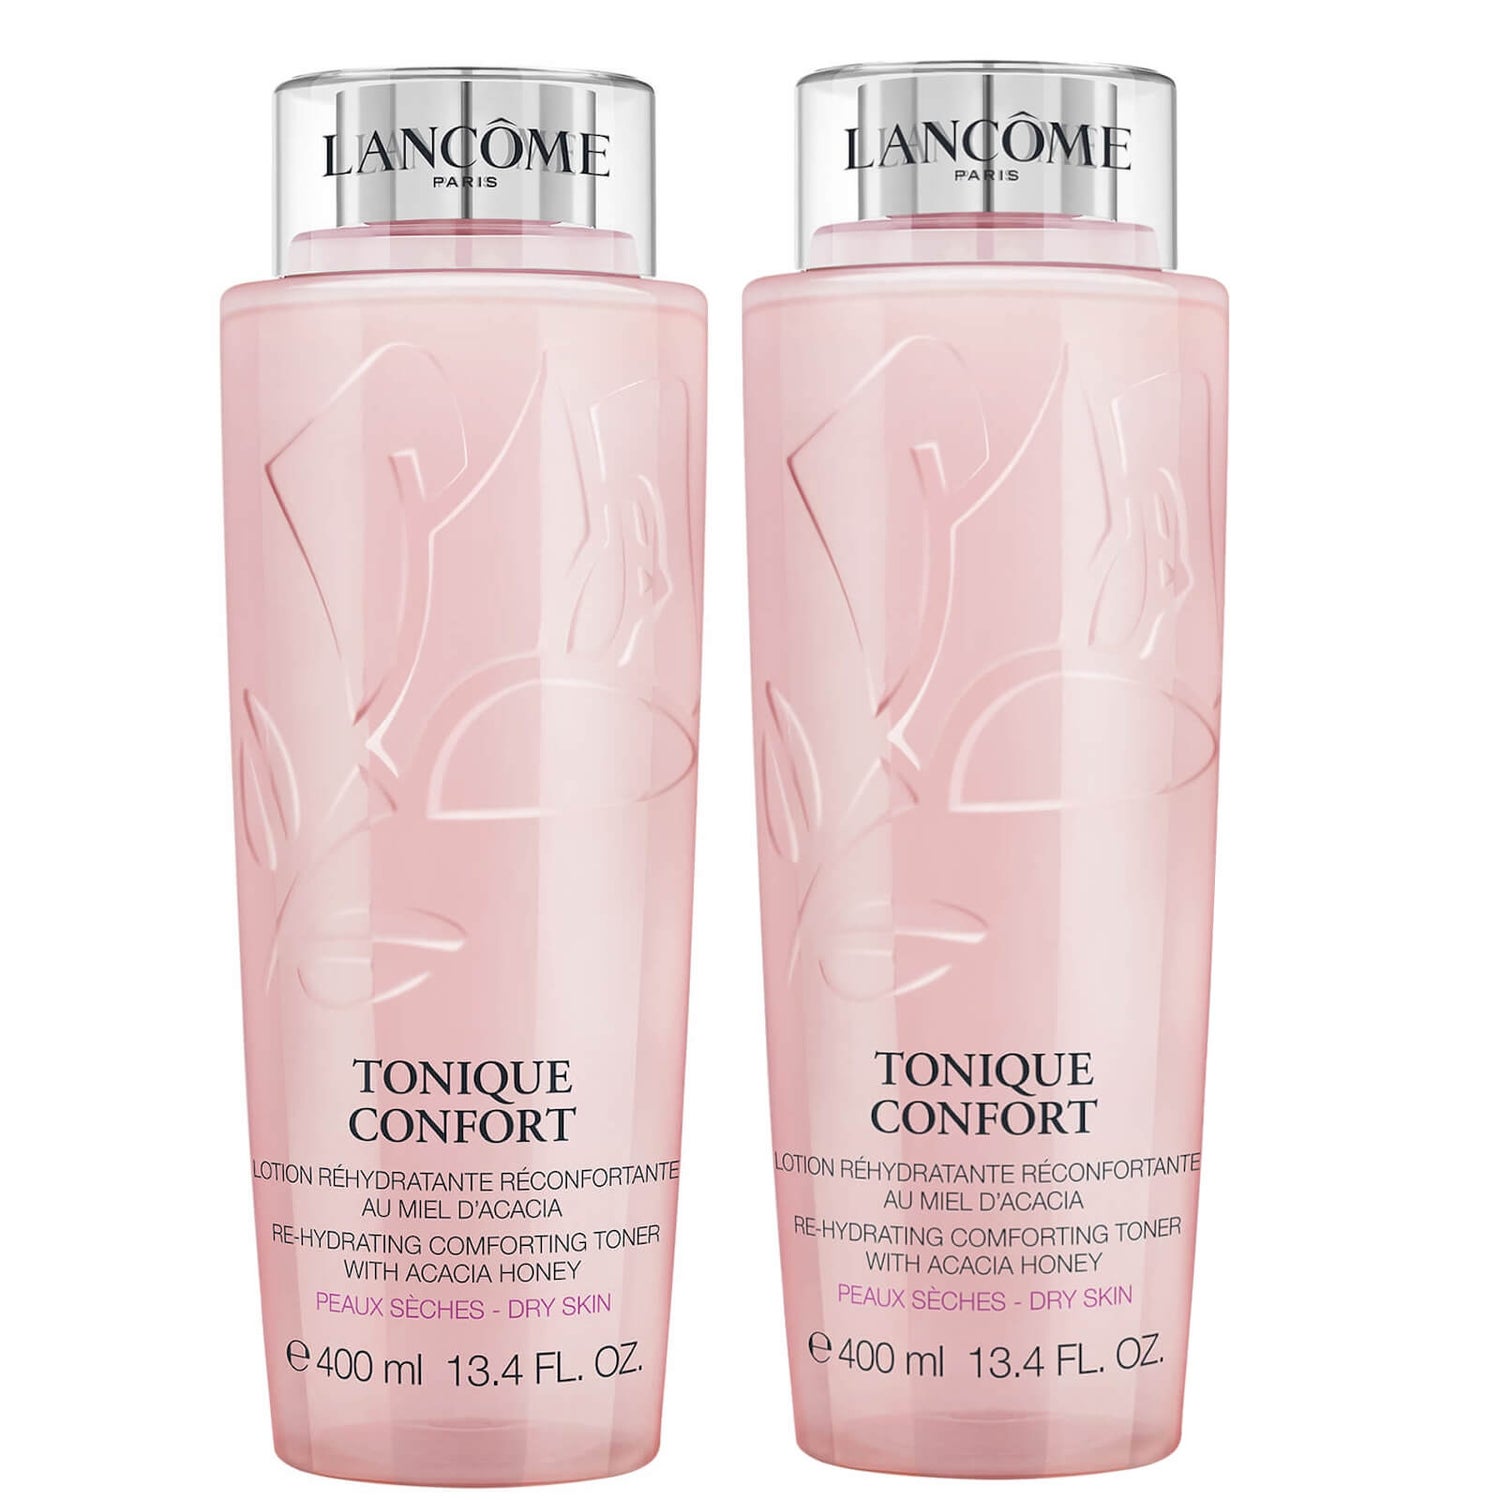 Lancôme Tonique Confort Duo